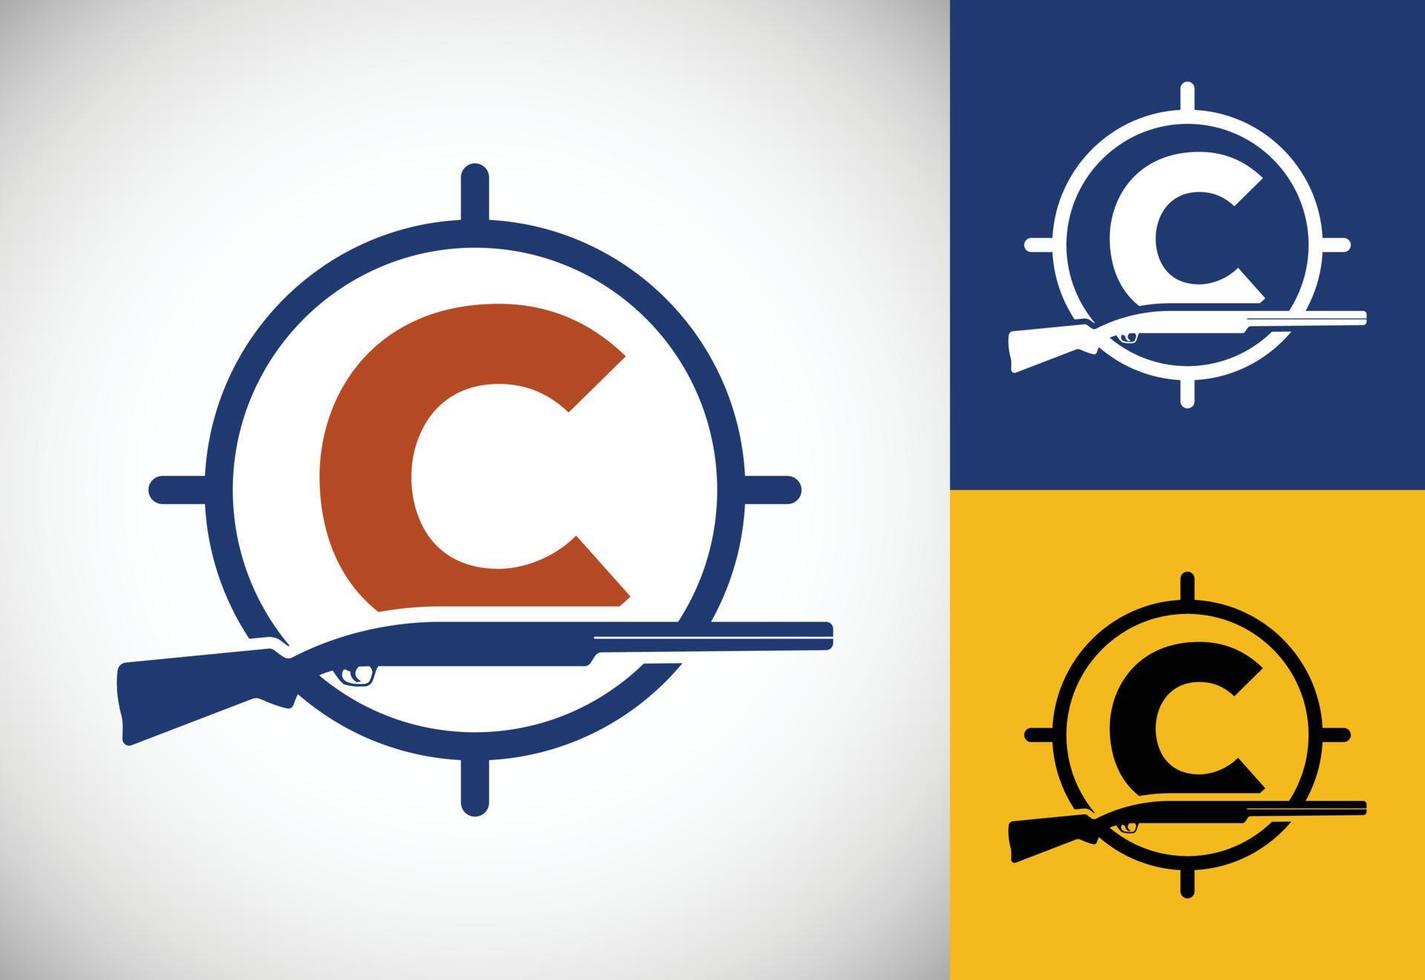 alfabeto inicial c con pistola y signo de objetivo. vector del logotipo del club de caza de inspiración. logotipo de caza